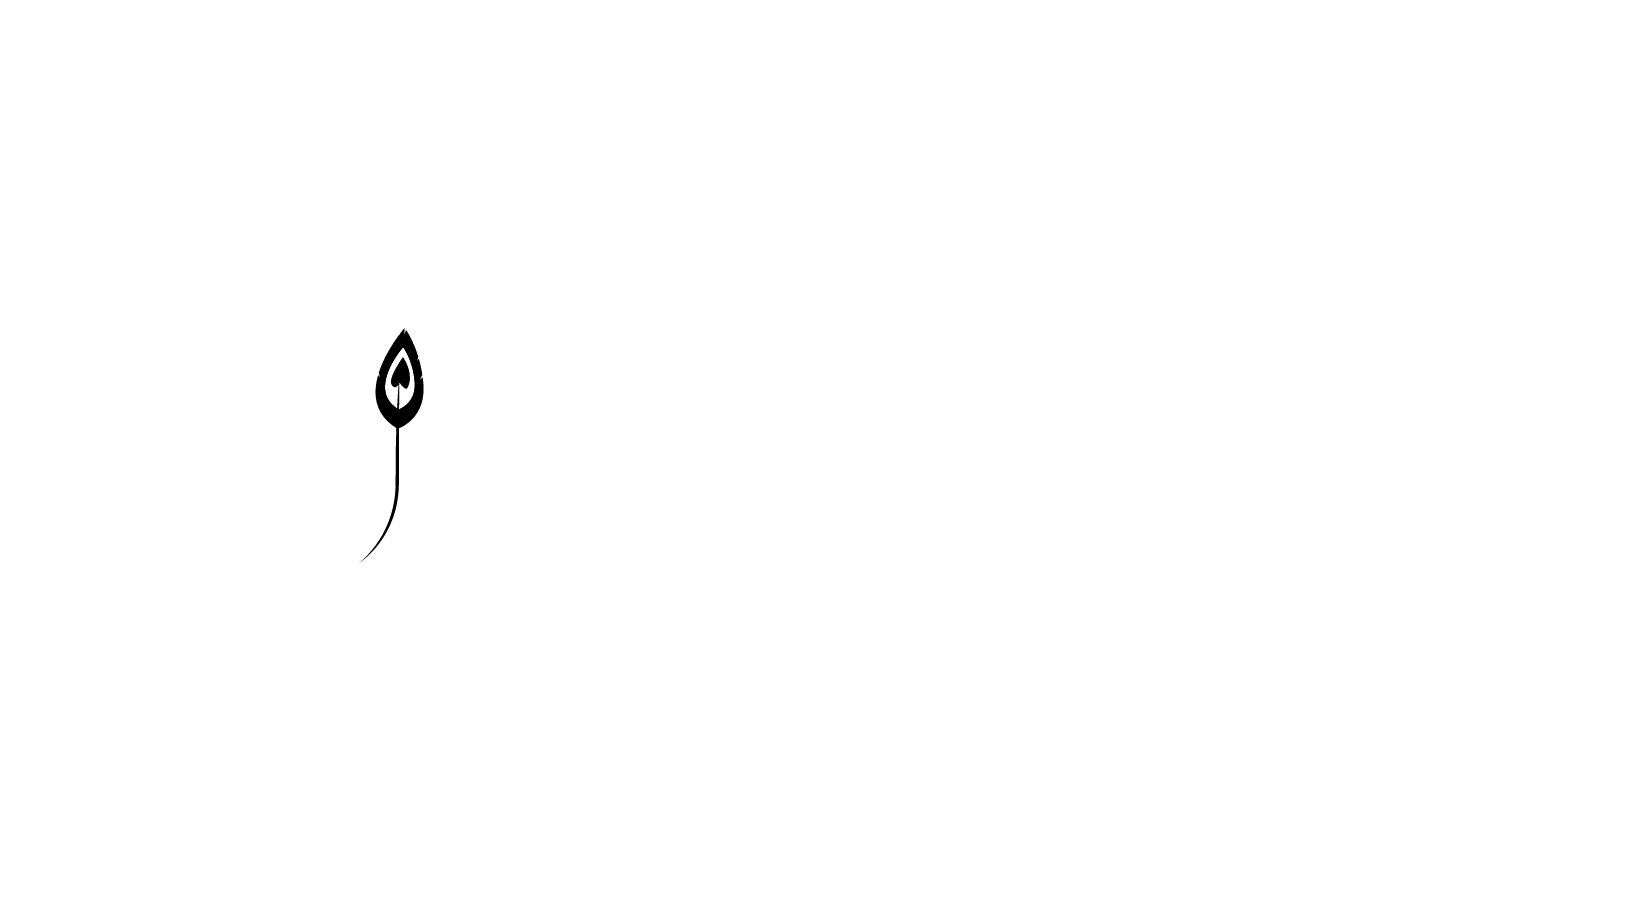 Hope Institute Burma